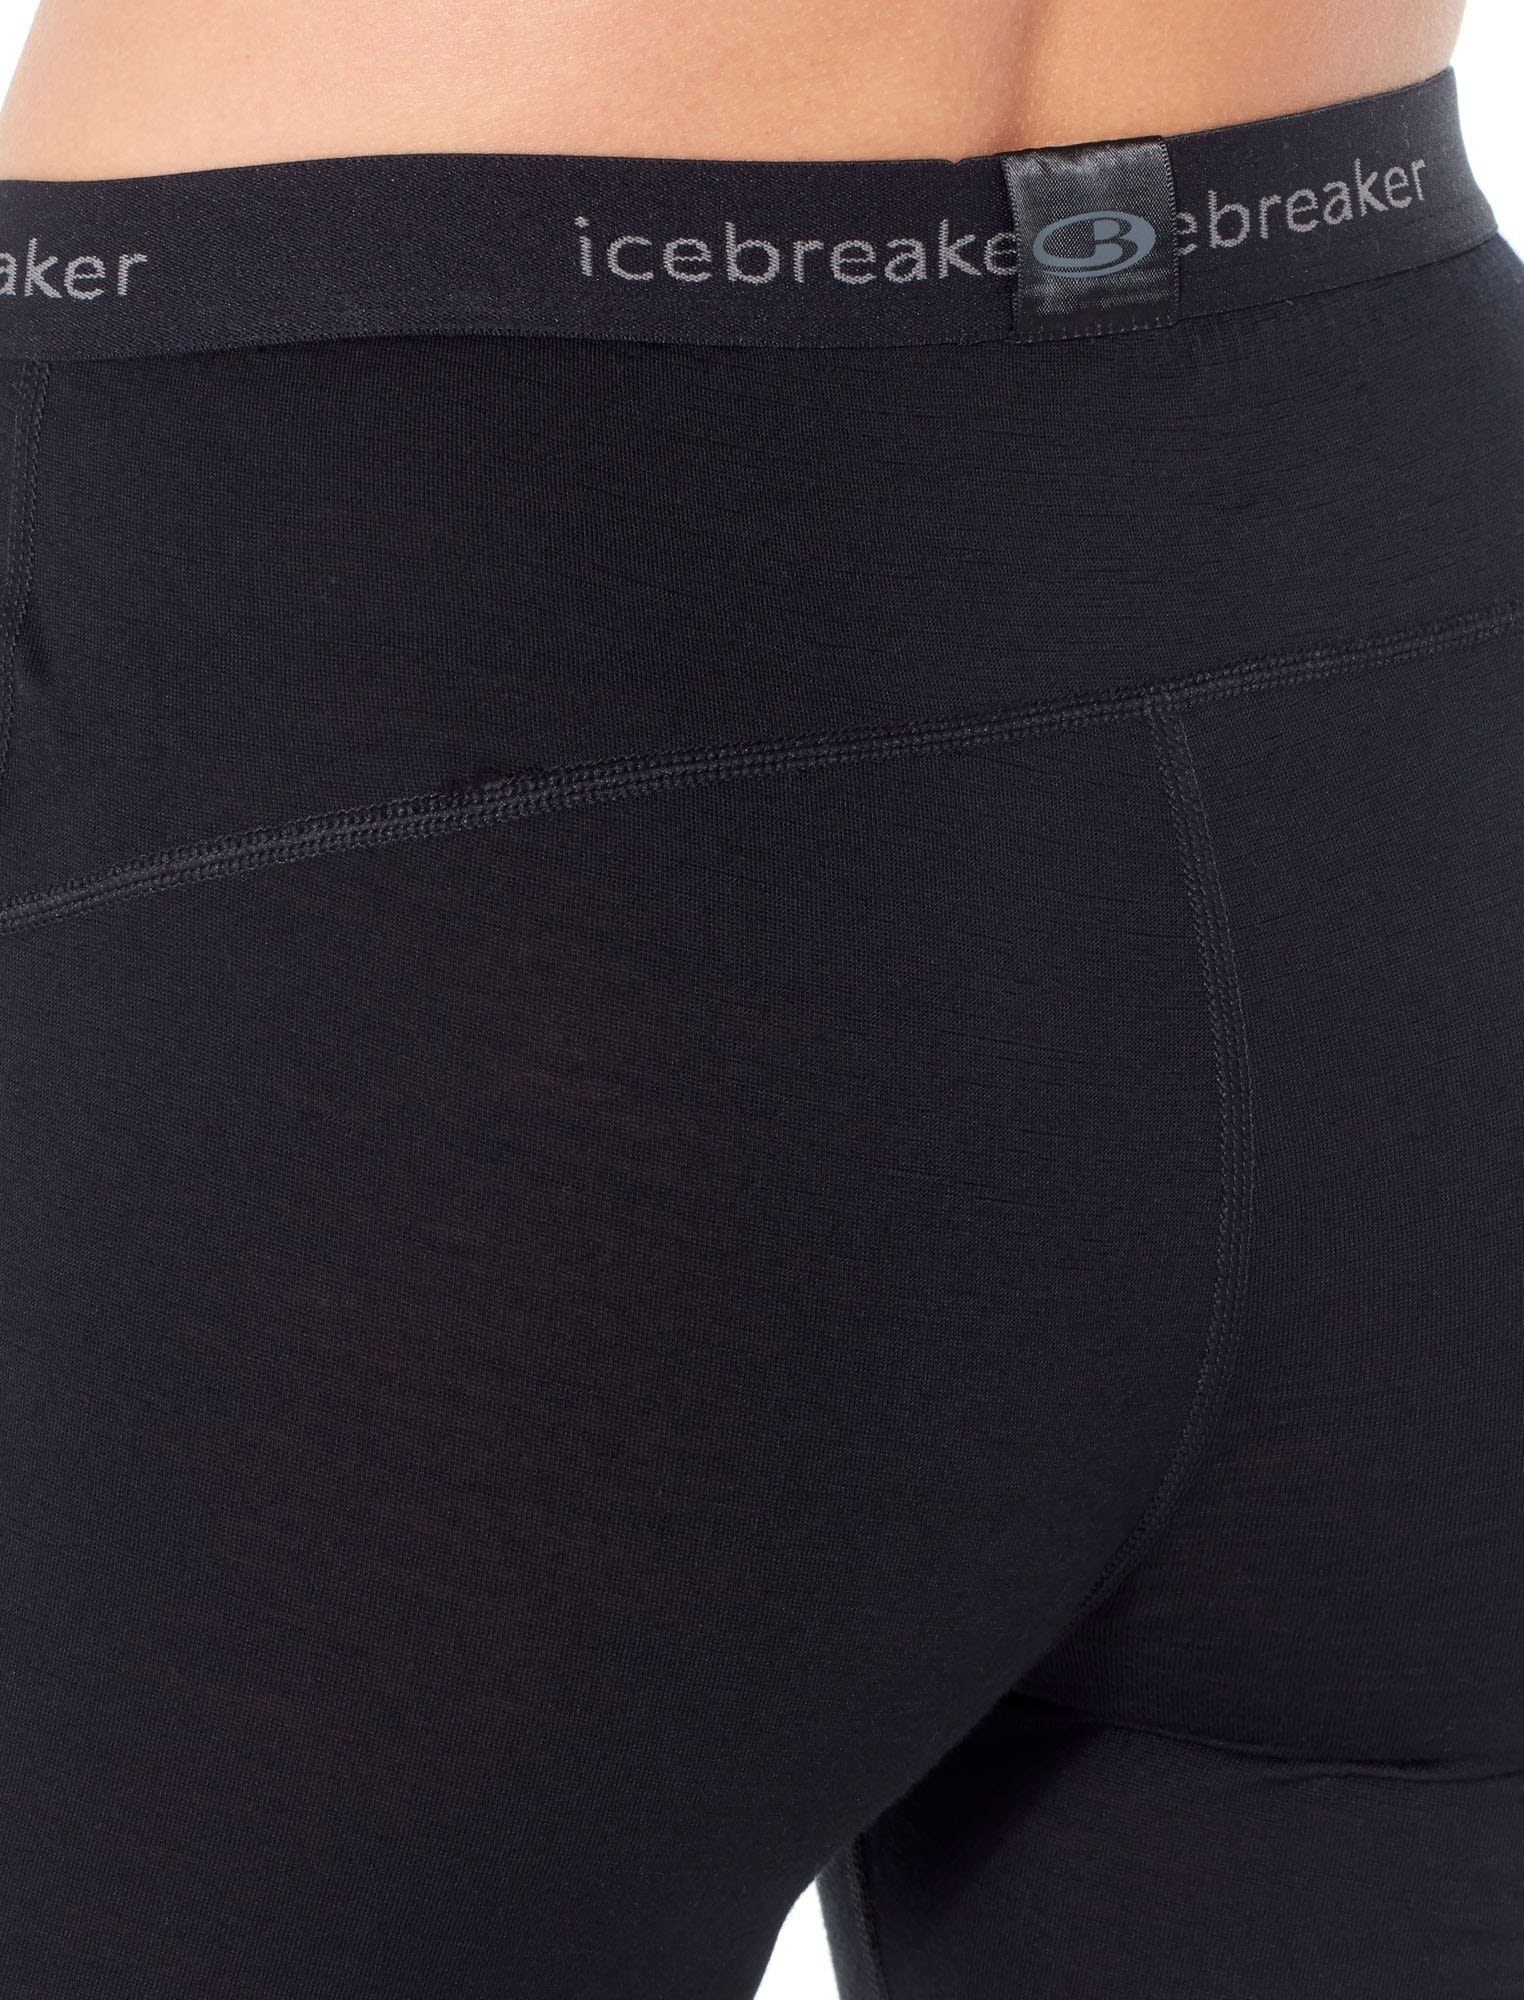 Black 200 Kurze Icebreaker Legless Oasis Lange Unterhose Damen W Icebreaker